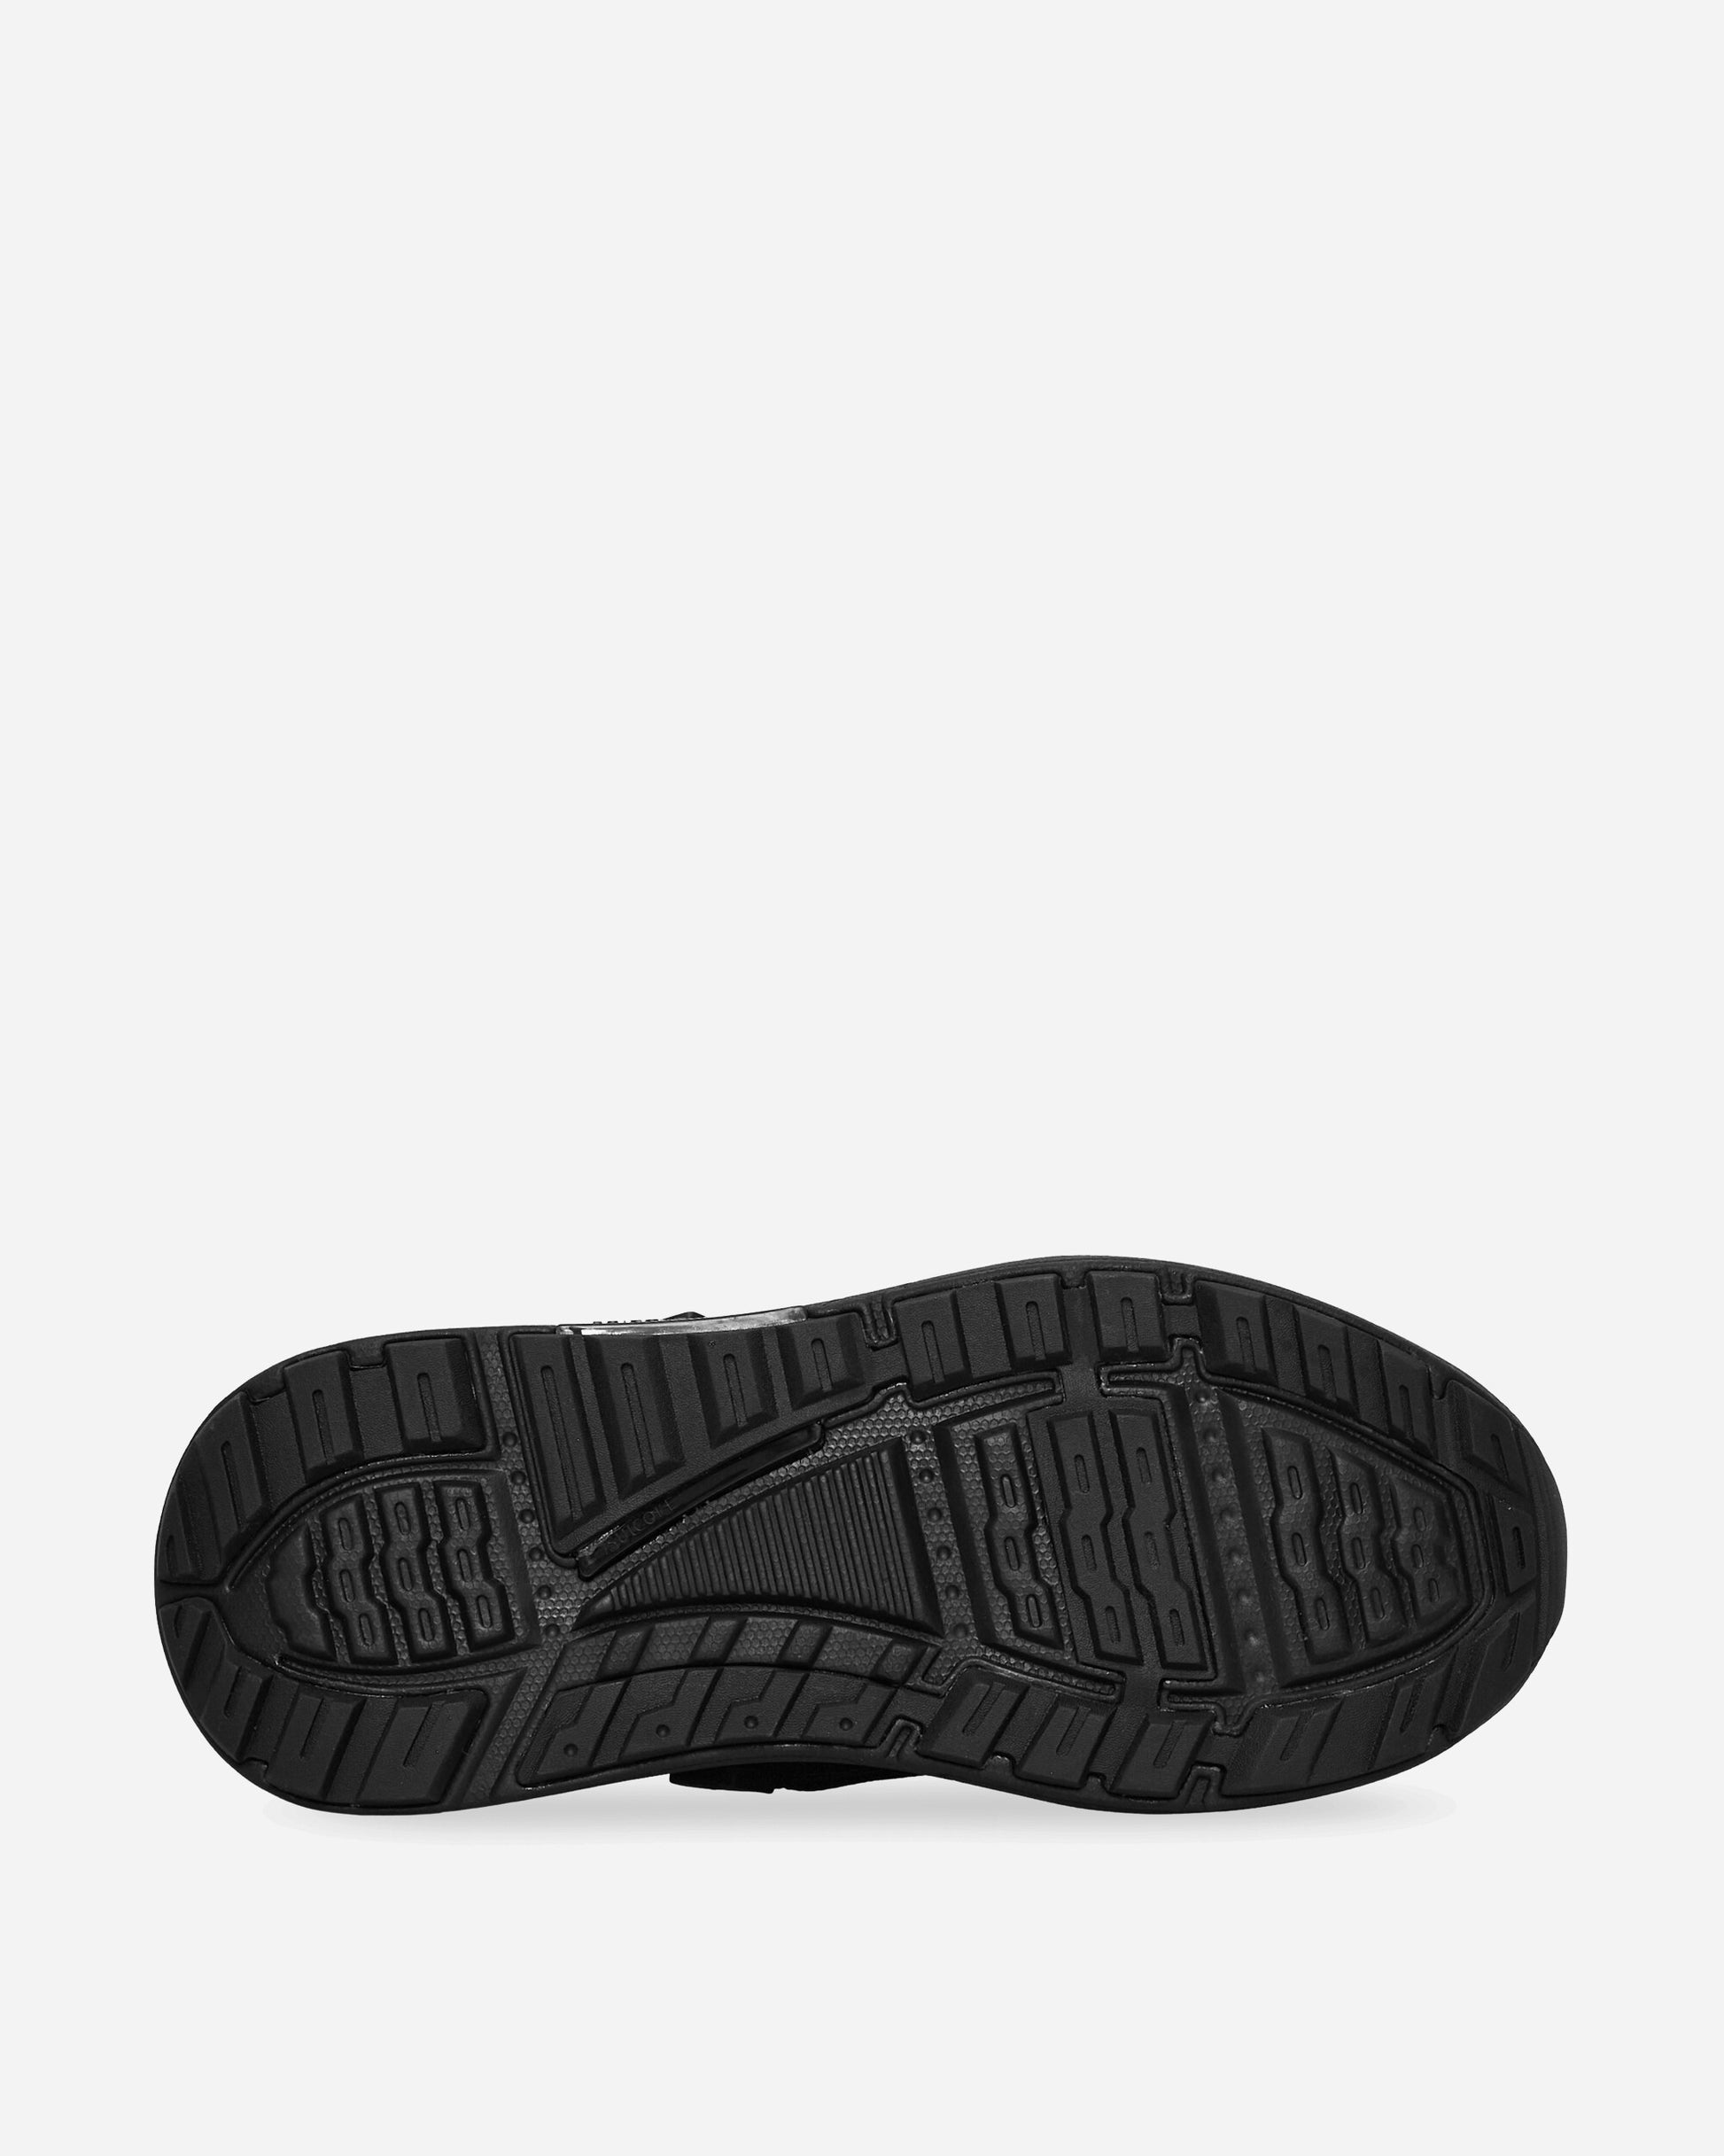 Suicoke Tred Black Sandals and Slides Sandals and Mules OG349 BLK